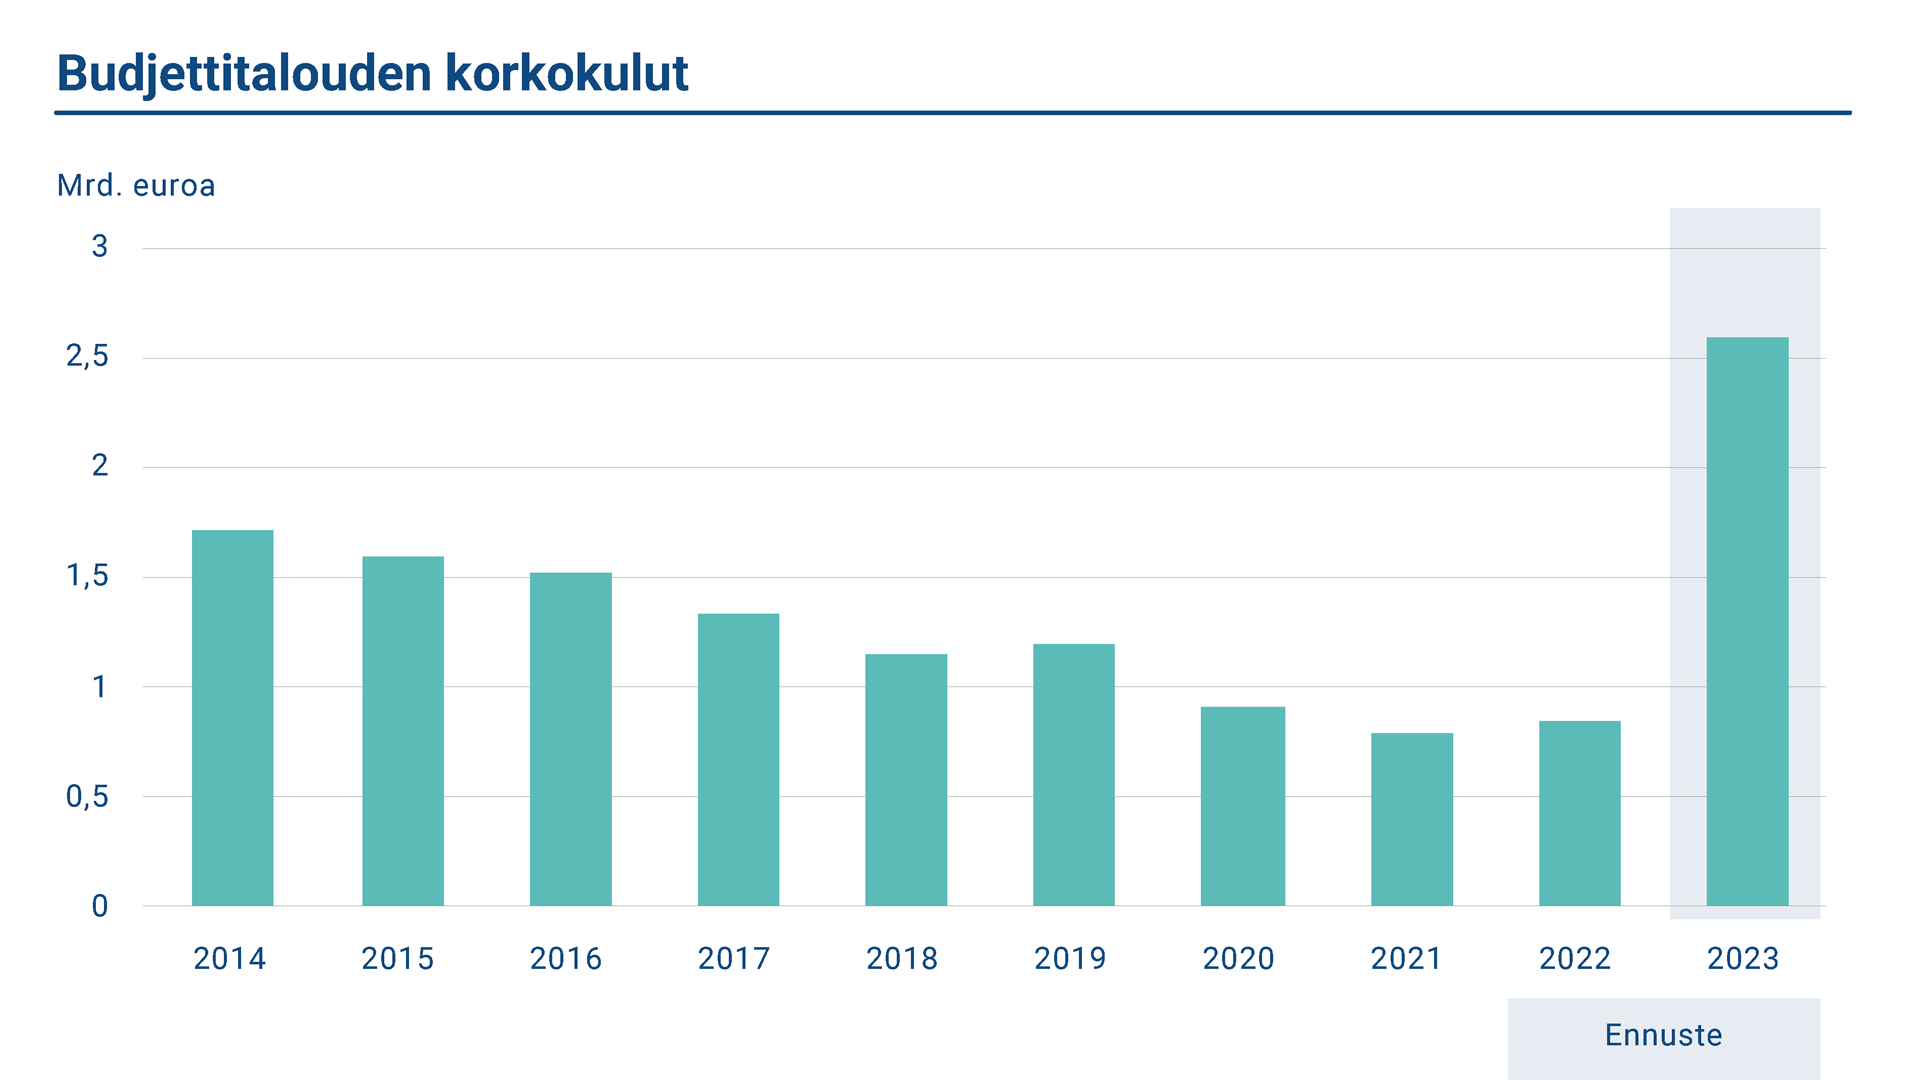 Kaaviossa esitetään budjettivelan vuosittaiset korkokulut vuosilta 2014–23. Korkokulut vuonna 2022 olivat 0,8 miljardia euroa. Ennuste vuodelle 2022 on 2,6 miljardia euroa.